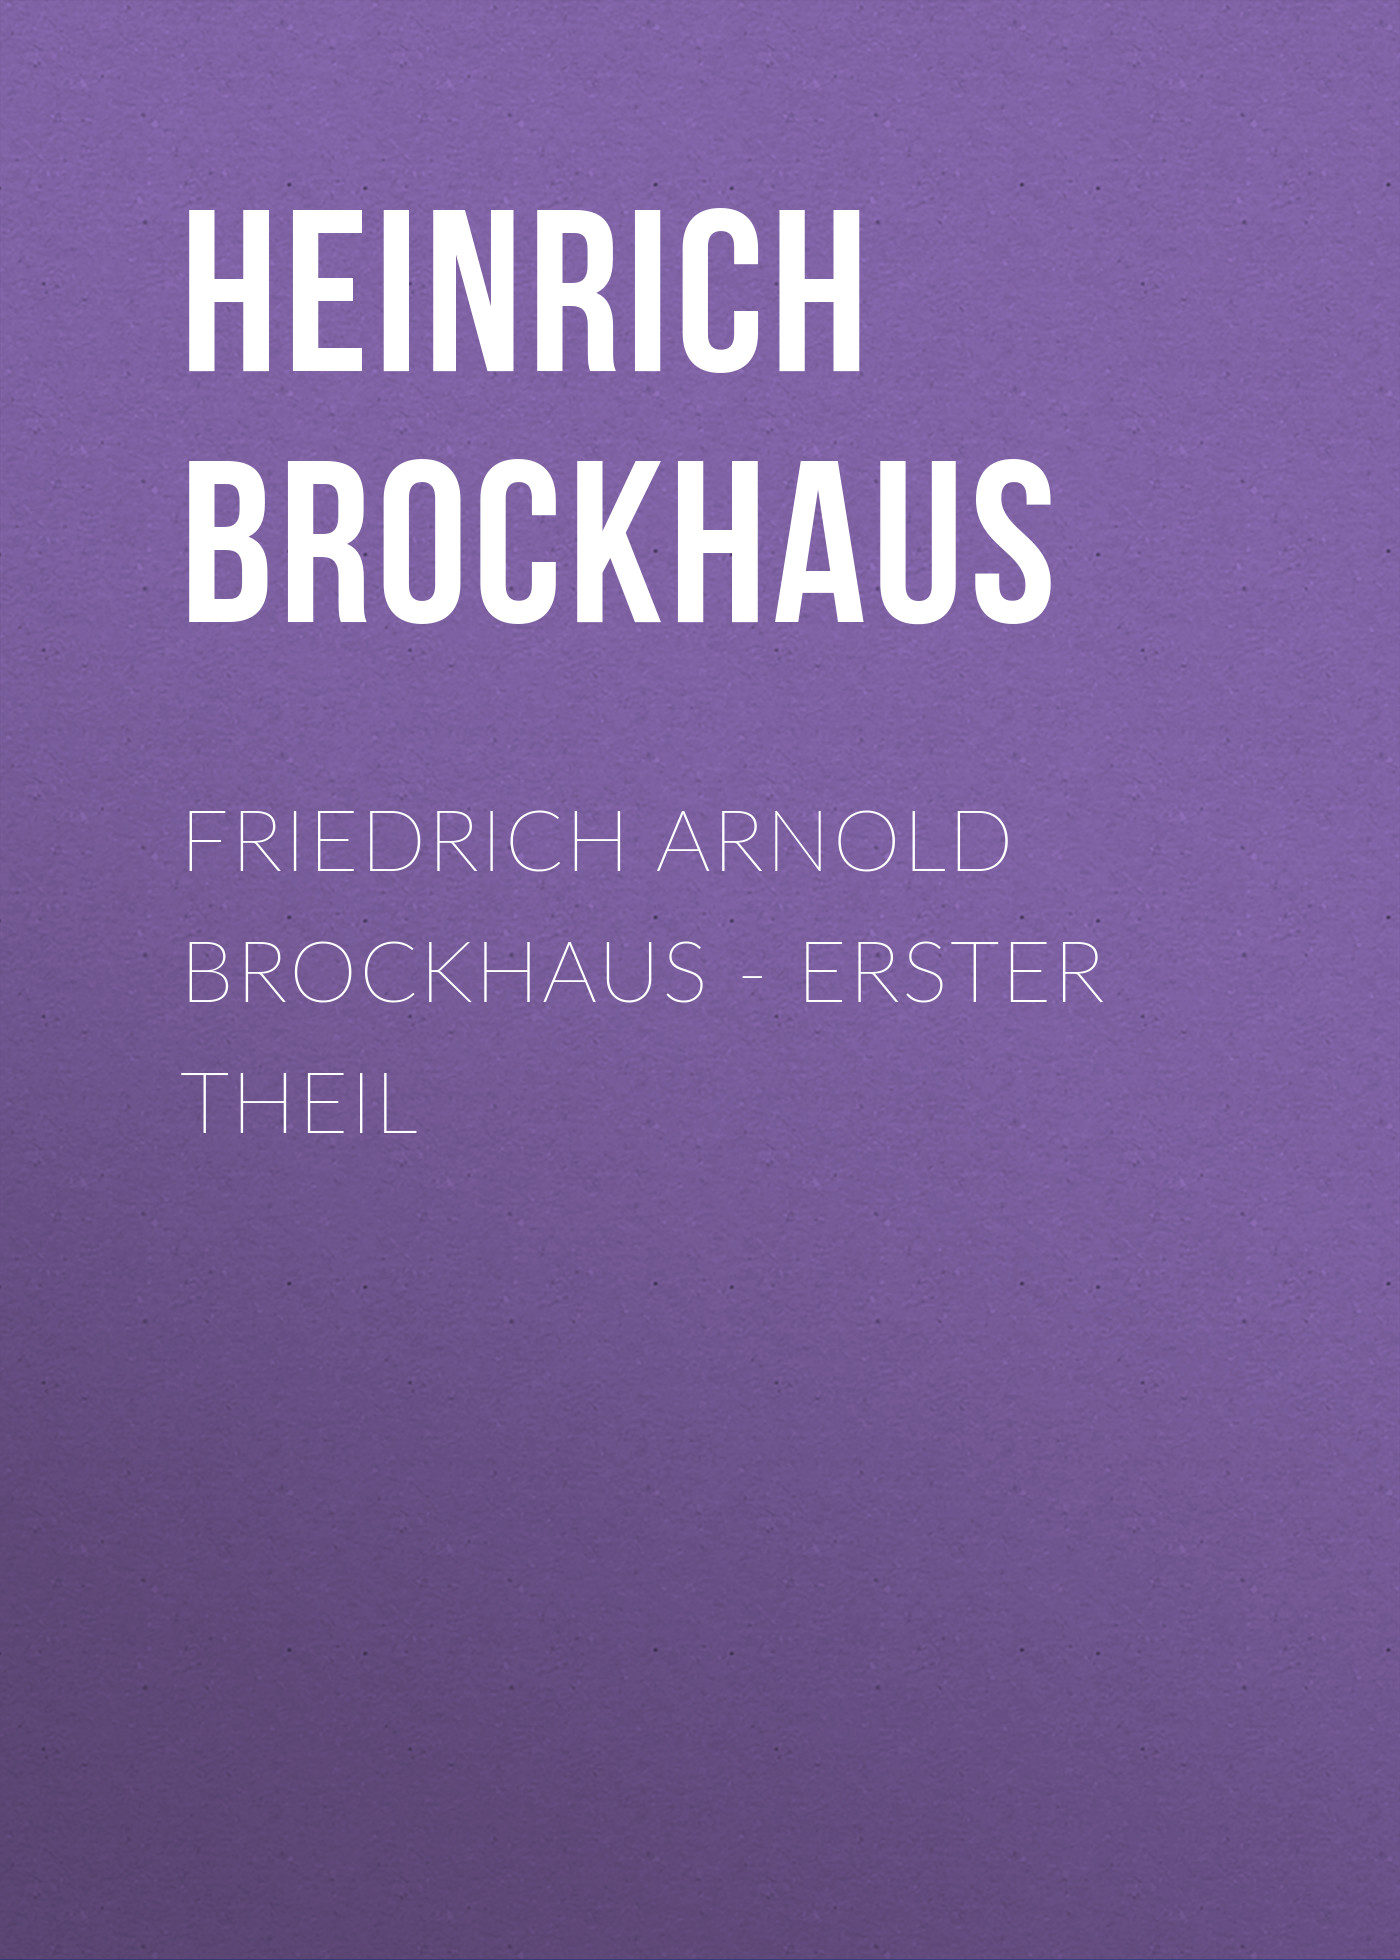 Книга Friedrich Arnold Brockhaus – Erster Theil из серии , созданная Heinrich Brockhaus, может относится к жанру Зарубежная старинная литература, Зарубежная классика. Стоимость электронной книги Friedrich Arnold Brockhaus – Erster Theil с идентификатором 24180164 составляет 0 руб.